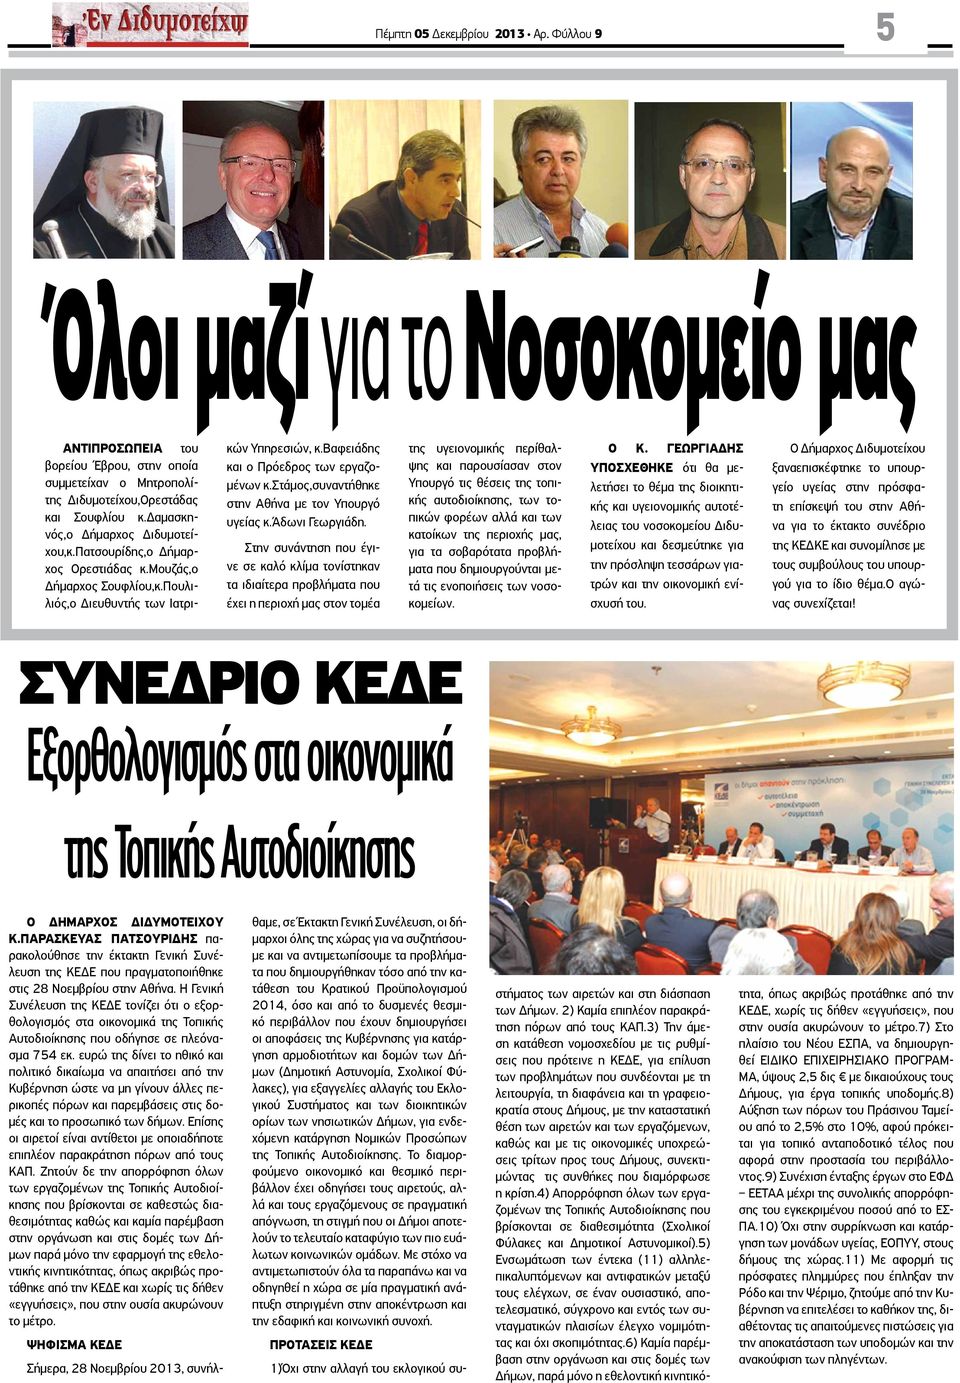 στάμος,συναντήθηκε στην Αθήνα με τον Υπουργό υγείας κ.άδωνι Γεωργιάδη.